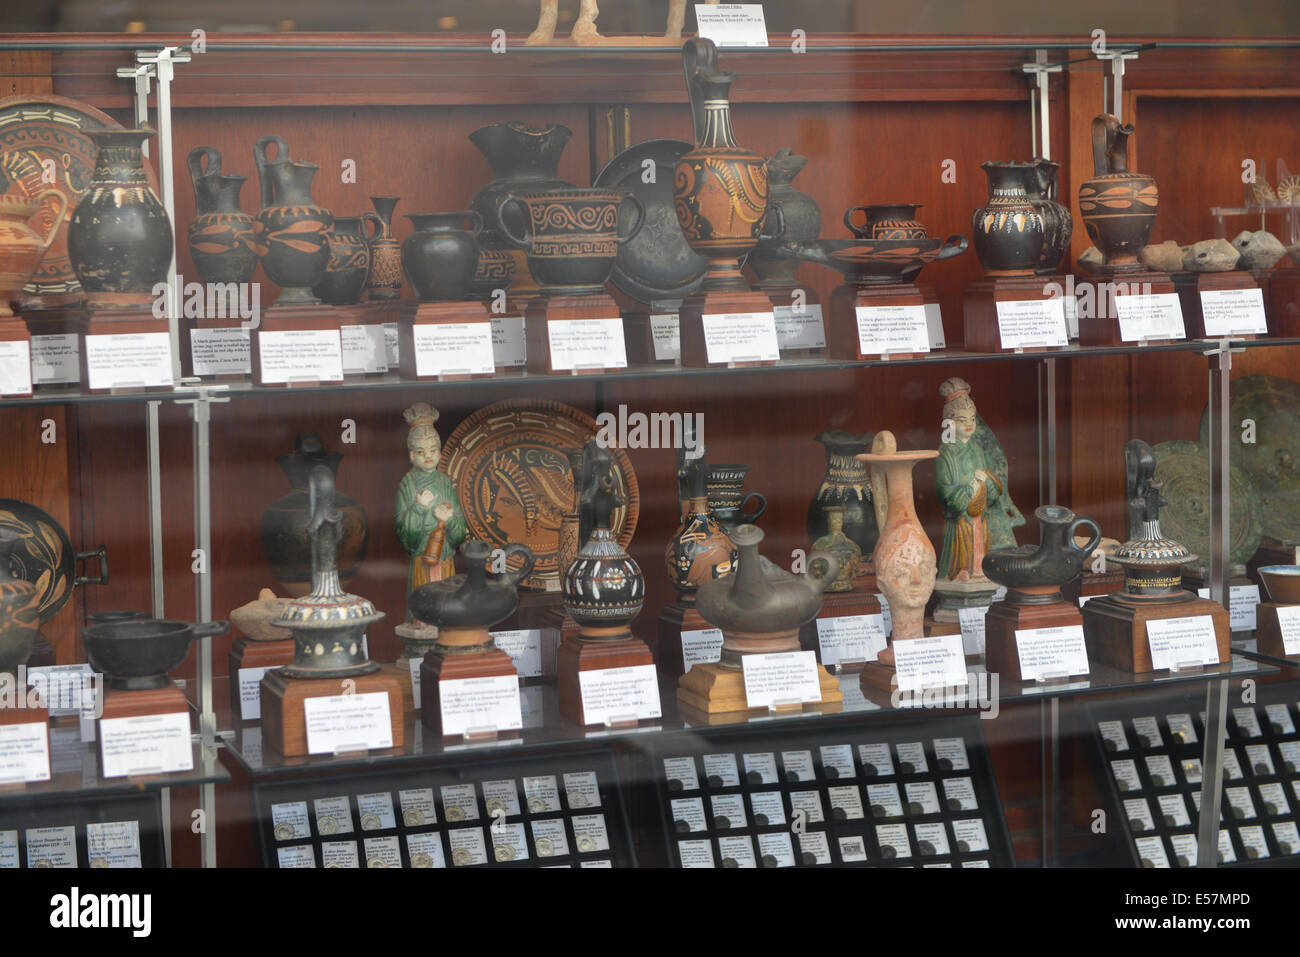 Collection de vases romains grecque classique dans un magasin près du British Museum, Londres. Banque D'Images